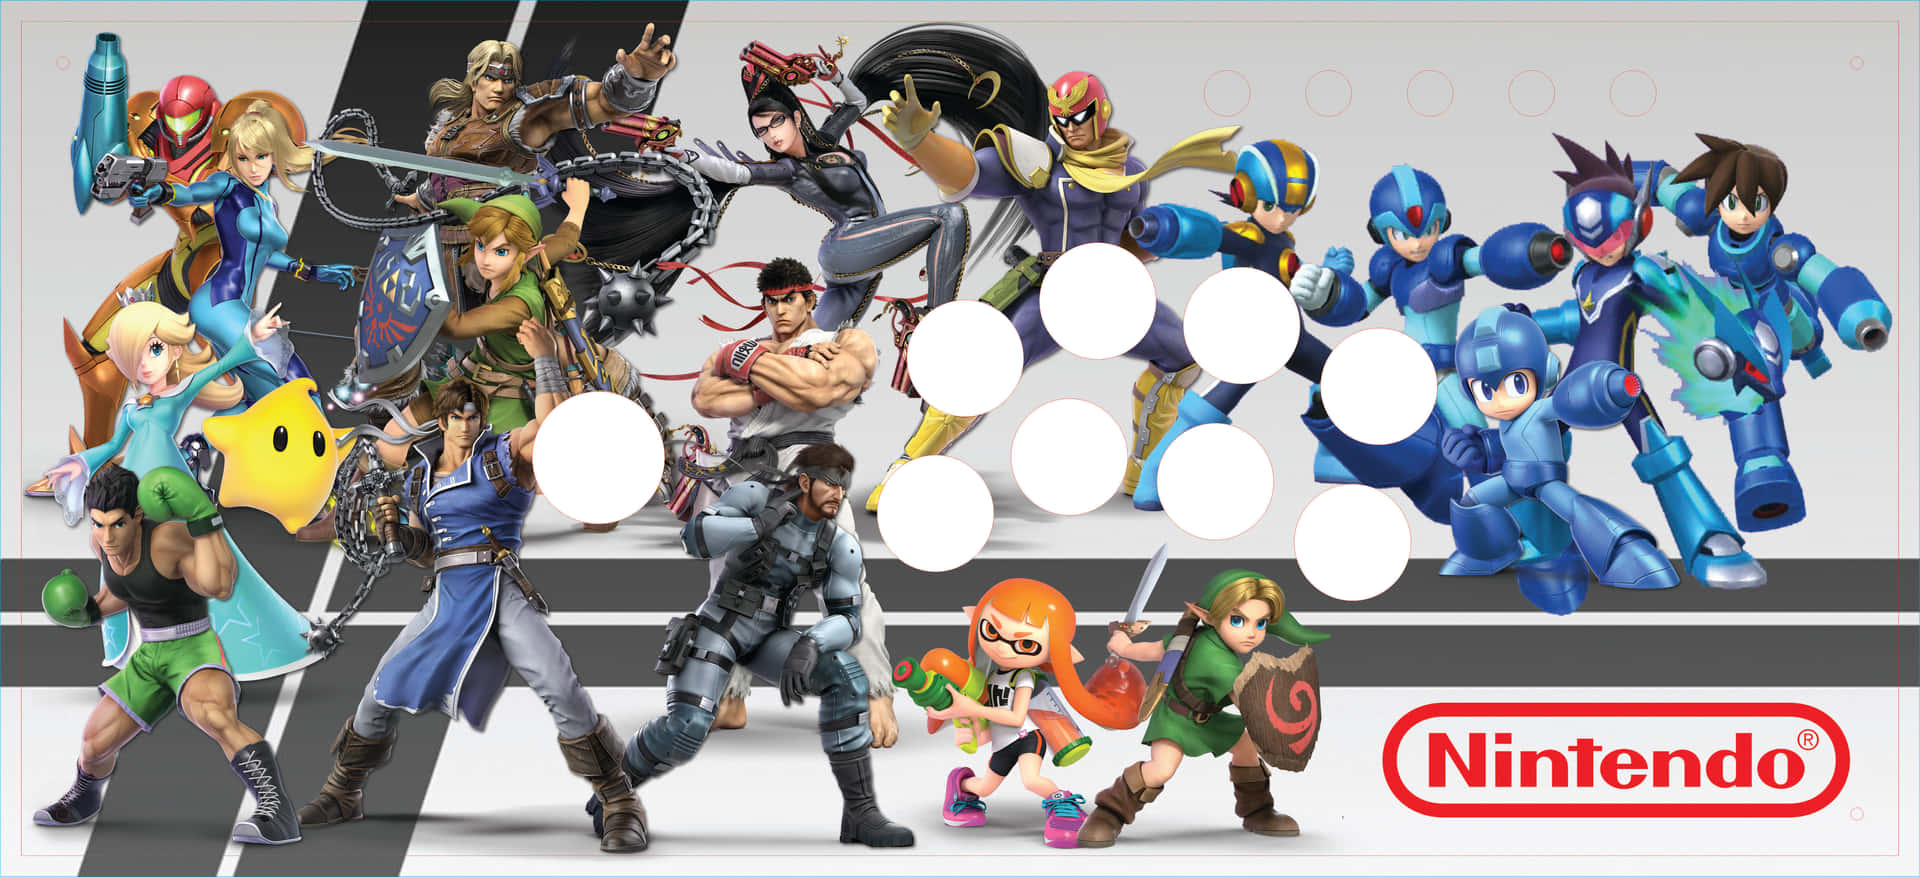 Ungrupo De Personajes En Un Juego De Nintendo